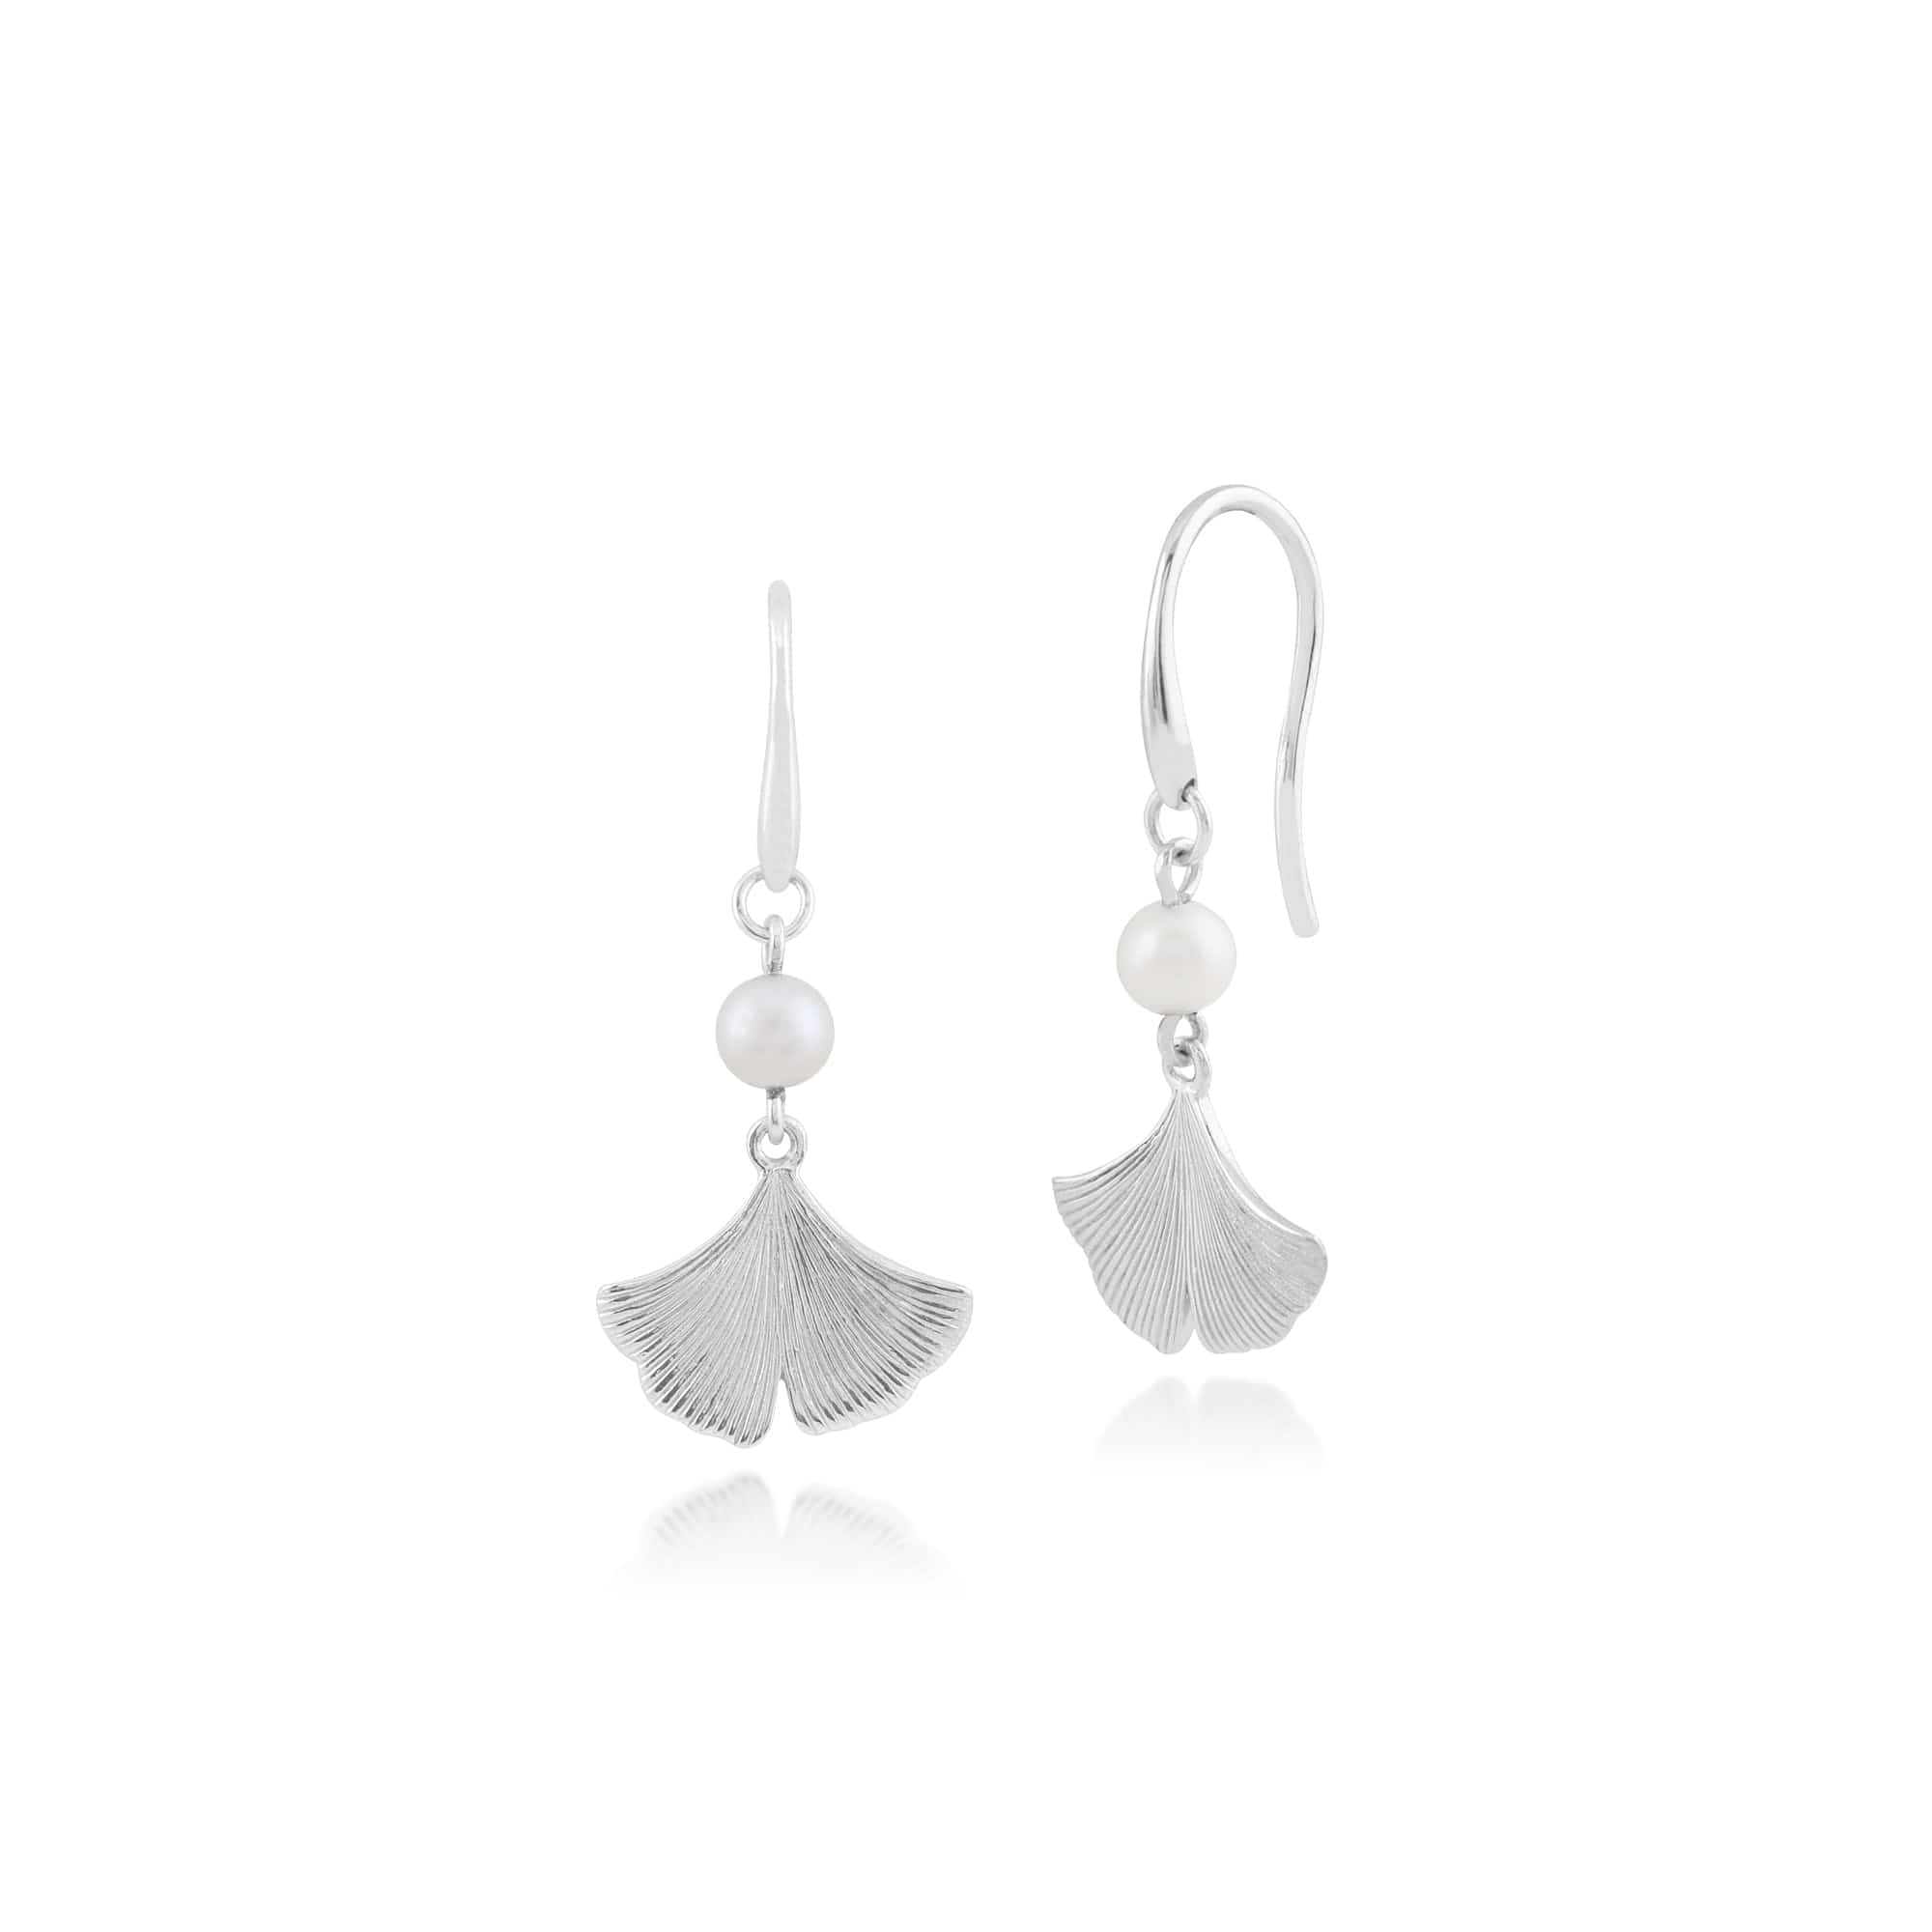 Floral Pearl Gingko Leaf Drop Earrings in 925 Sterling Silver - Gemondo